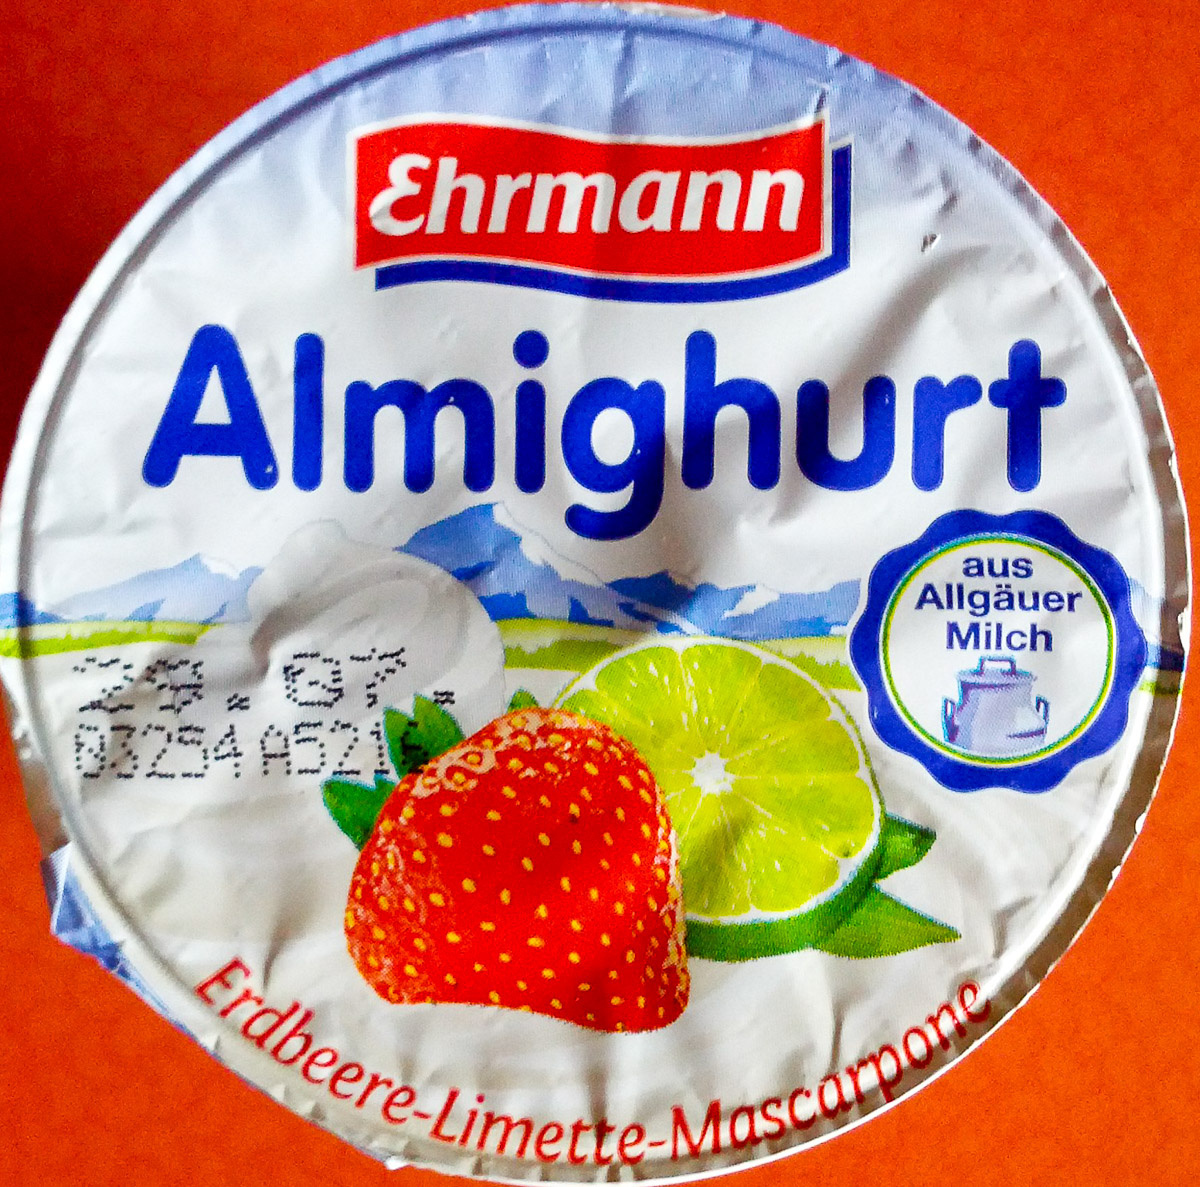 Almighurt Erdbeere-Limette-Mascarpone - Produkt